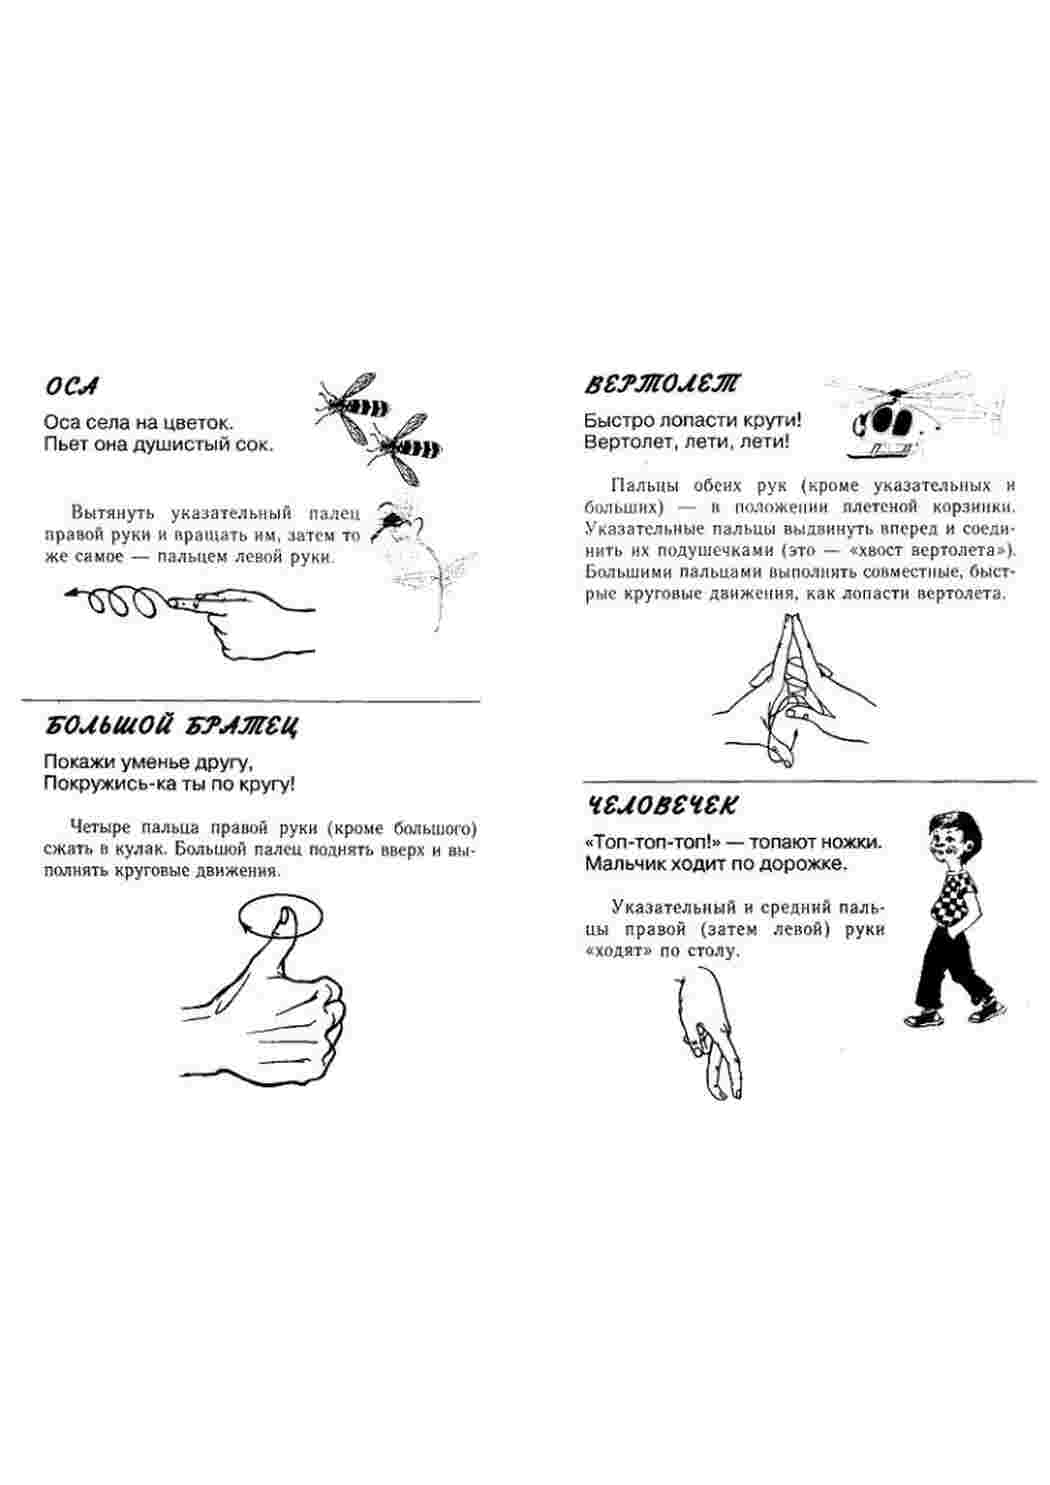 Пальчиковая игра мастера. Упражнение для развития мелкой моторики пальцев. Упражнения для мелкой моторики рук для детей. Гимнастика для мелкой моторики рук для дошкольников. Упражнения для мелкой моторики для детей пальчиковая гимнастика.